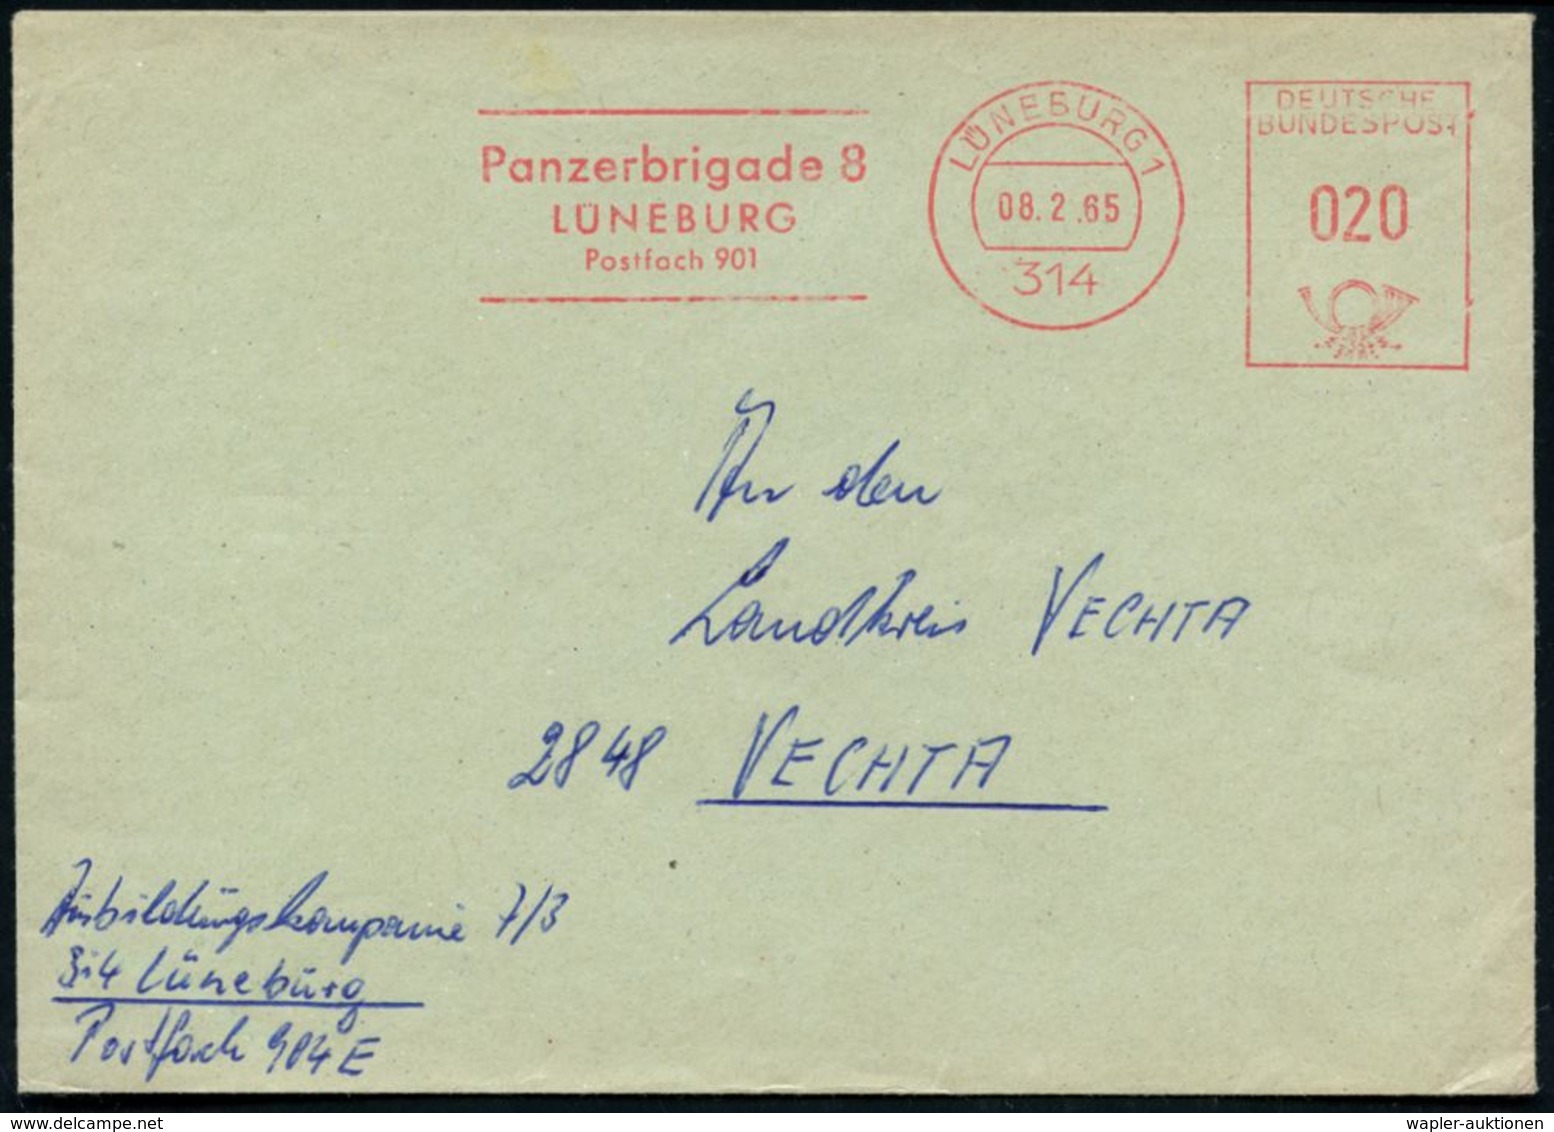 GEPANZERTE KRAFTFAHRZEUGE / PANZER : 314 LÜNEBURG 1/ Panzerbrigade 8 1963 (27.8.) AFS , Klar Gest. Dienst-Bf. (hs. Abs.  - Sonstige (Land)